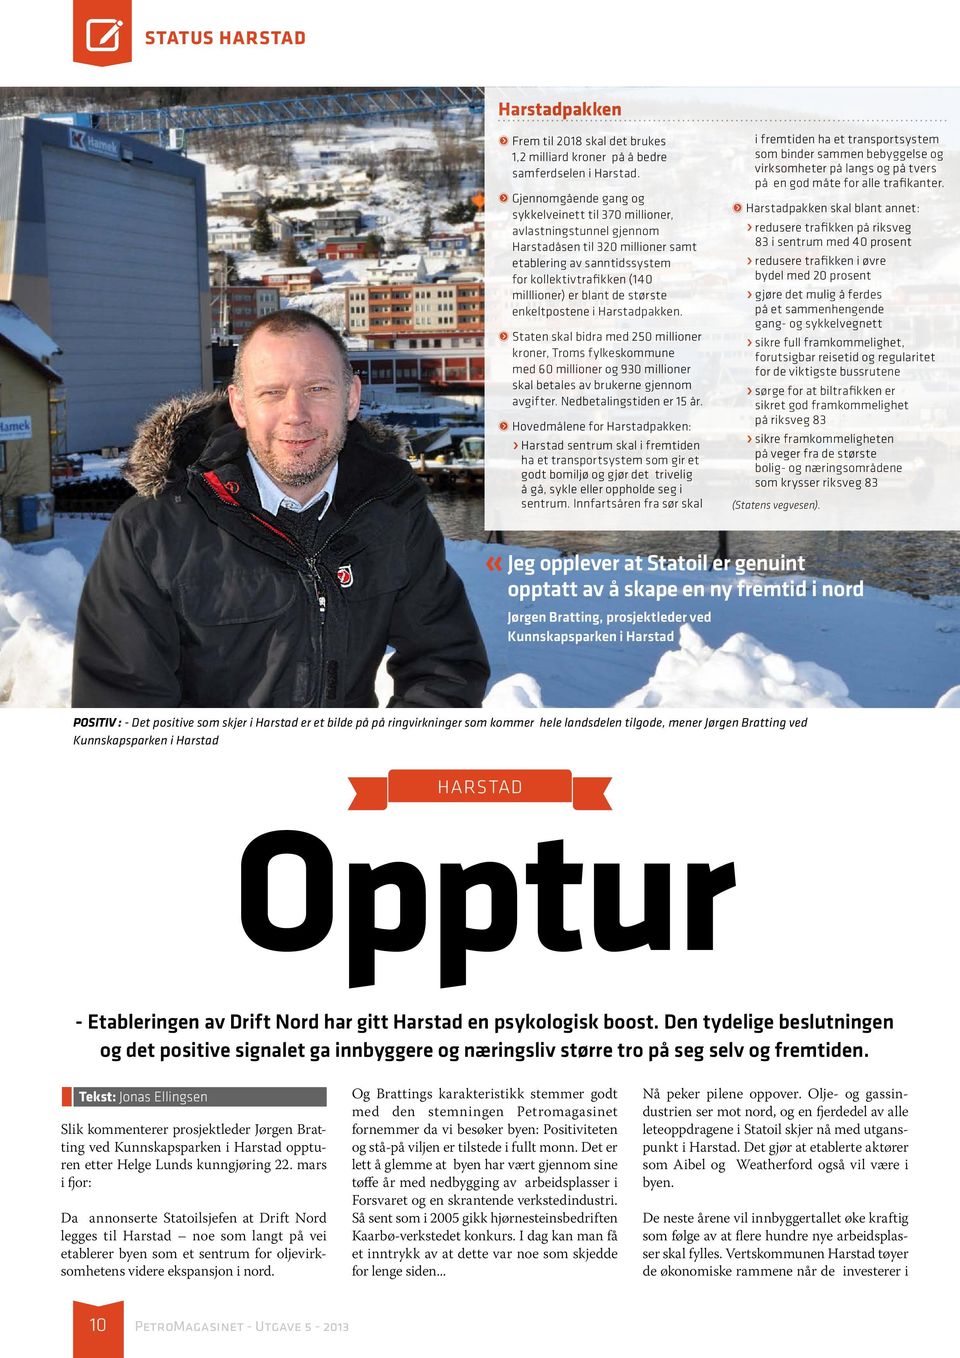 største enkeltpostene i Harstadpakken. ᏢᏢStaten skal bidra med 250 millioner kroner, Troms fylkeskommune med 60 millioner og 930 millioner skal betales av brukerne gjennom avgifter.